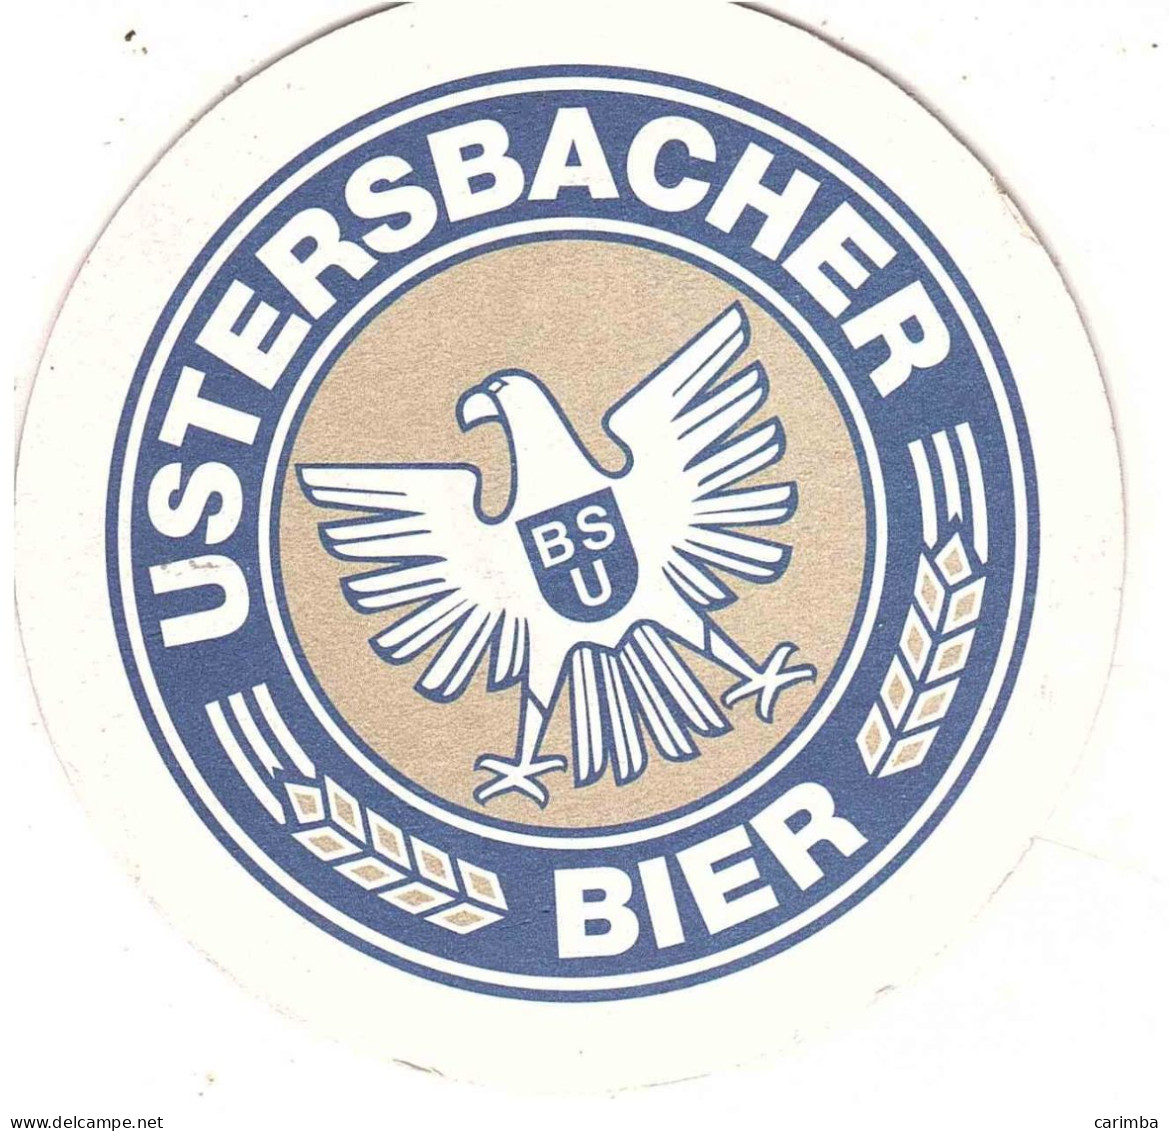 USTERSBACHER BIER - Sotto-boccale